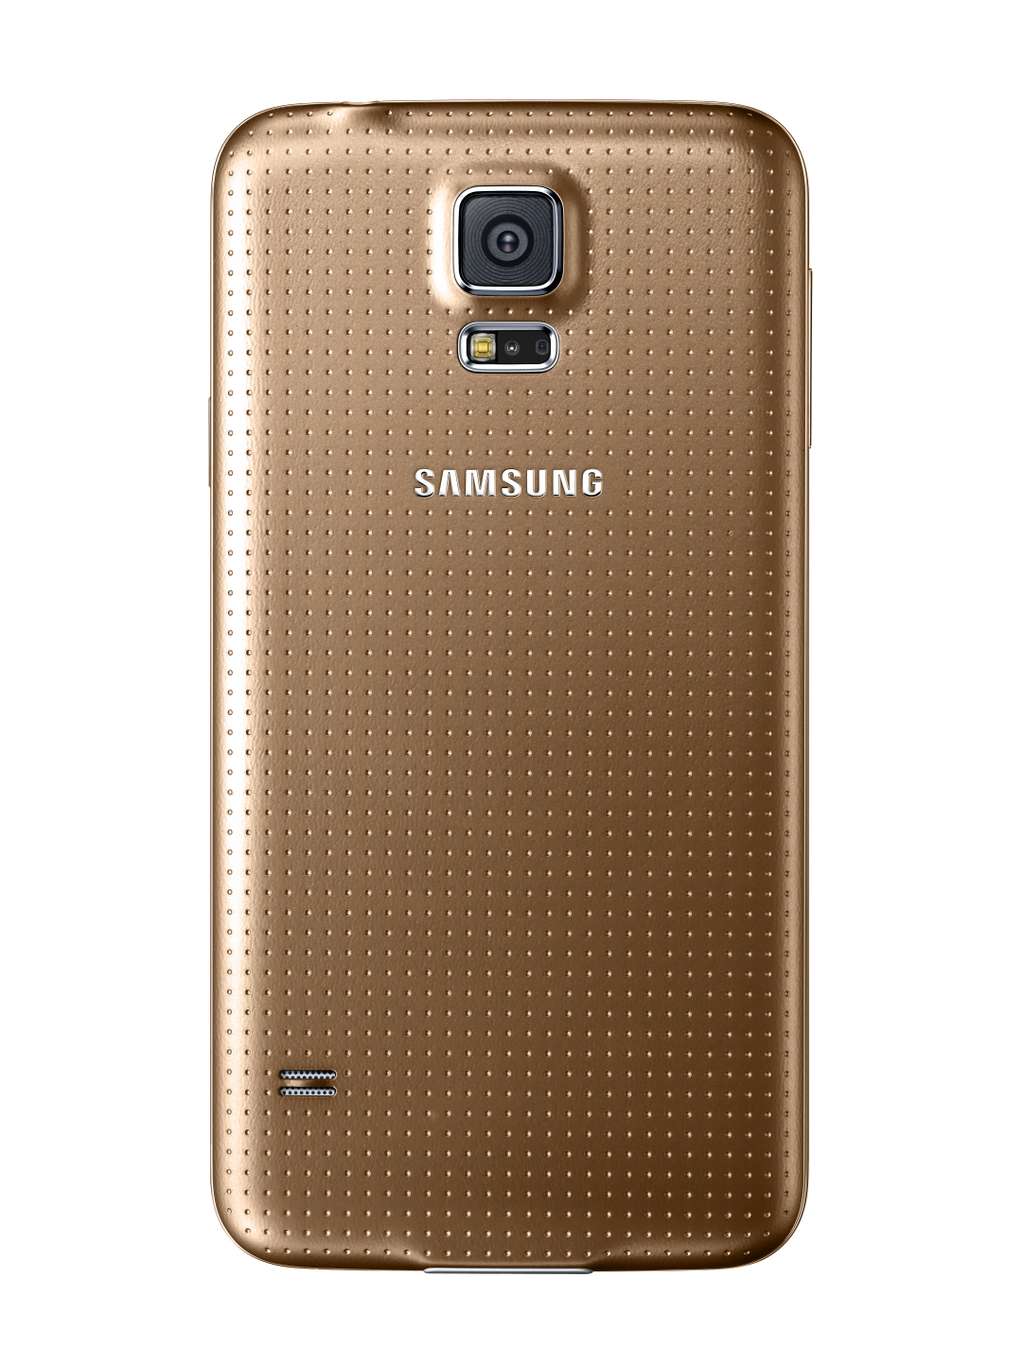 Samsung inaugure une nouvelle couleur cuivrée avec le Galaxy S5, suivant là une tendance que l’on retrouve chez d’autres constructeurs comme Apple ou HTC. © Samsung